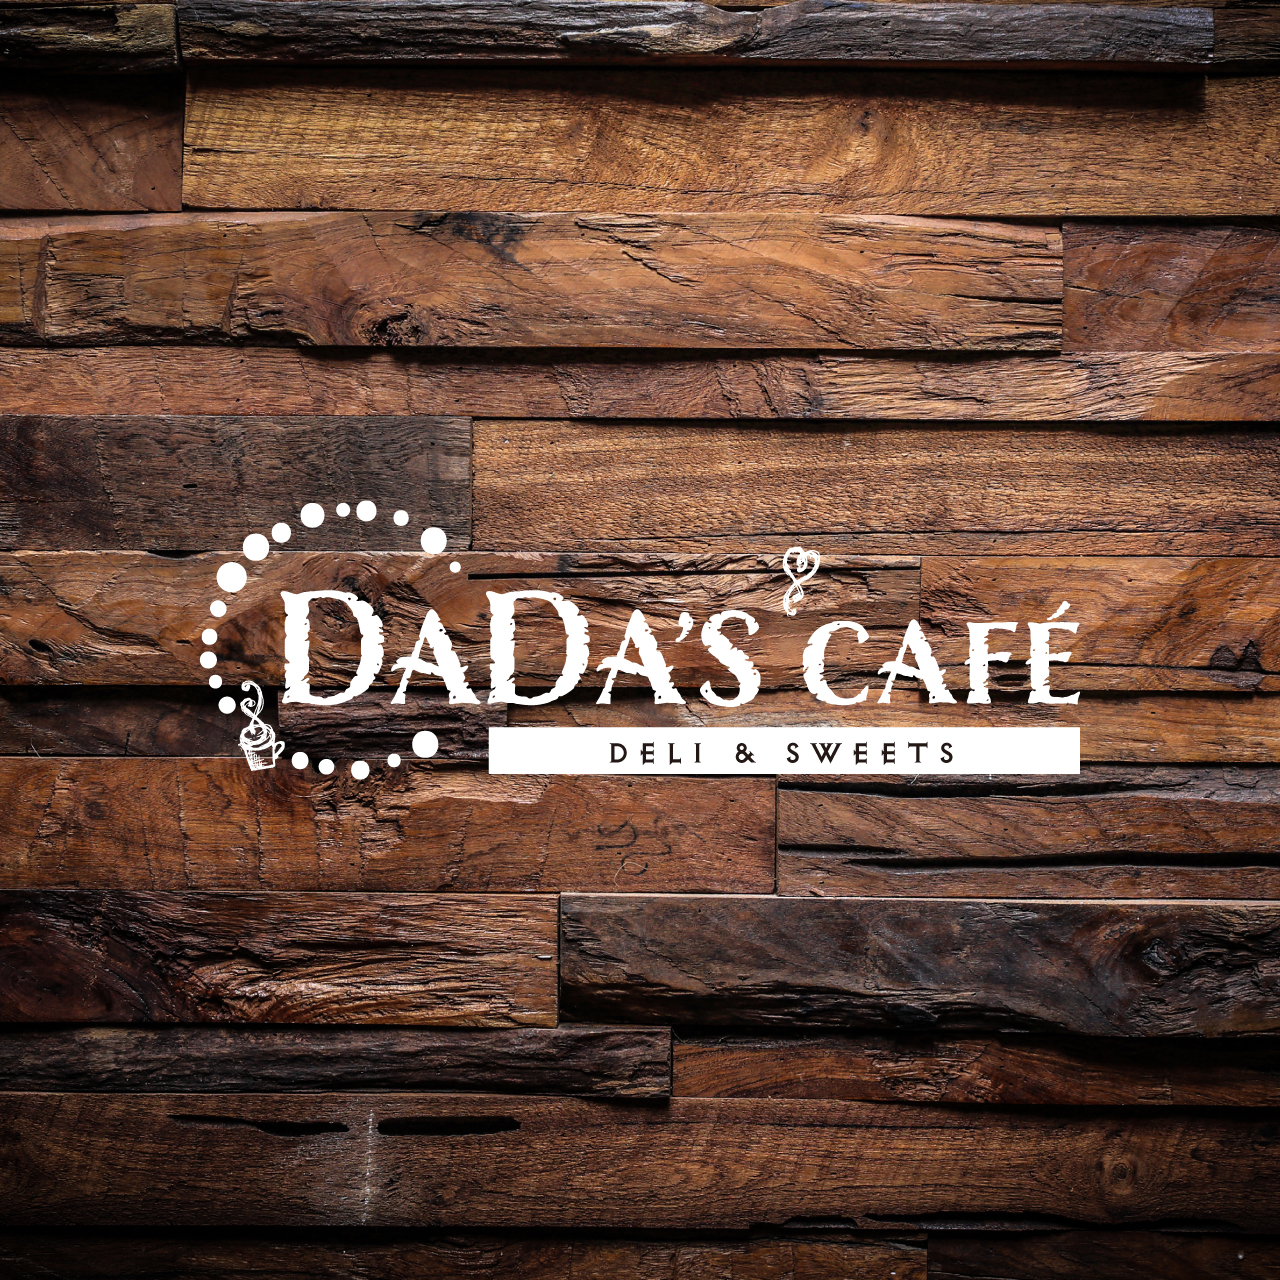 ダダスカフェ DADAs CAFE